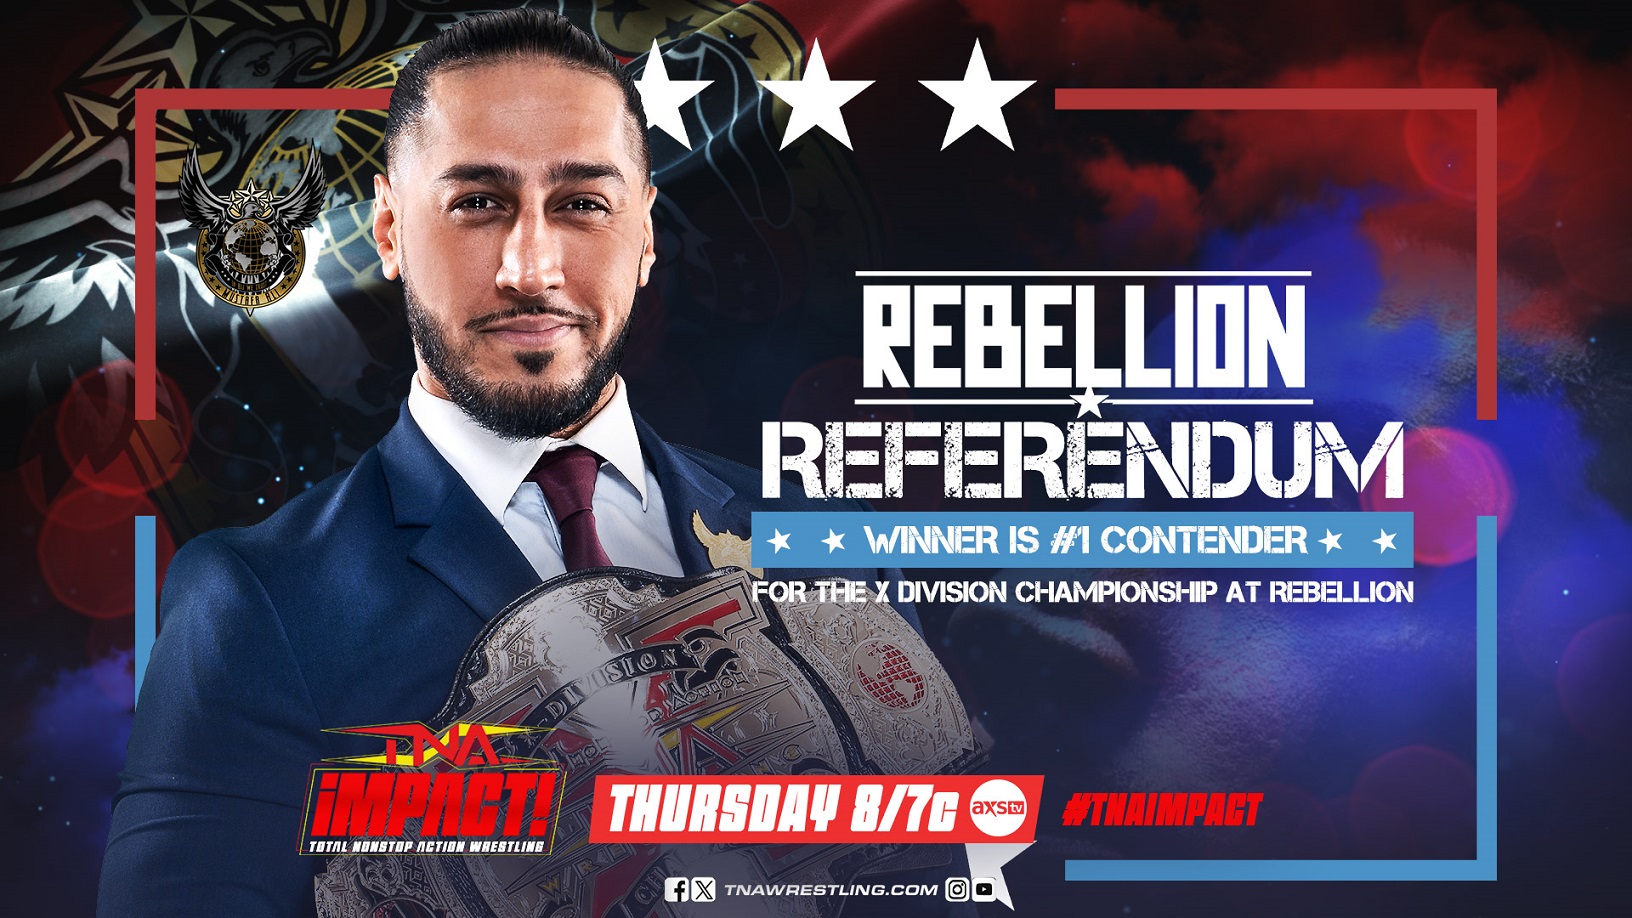 'Rebellion Referendum' Announced for TNA IMPACT!